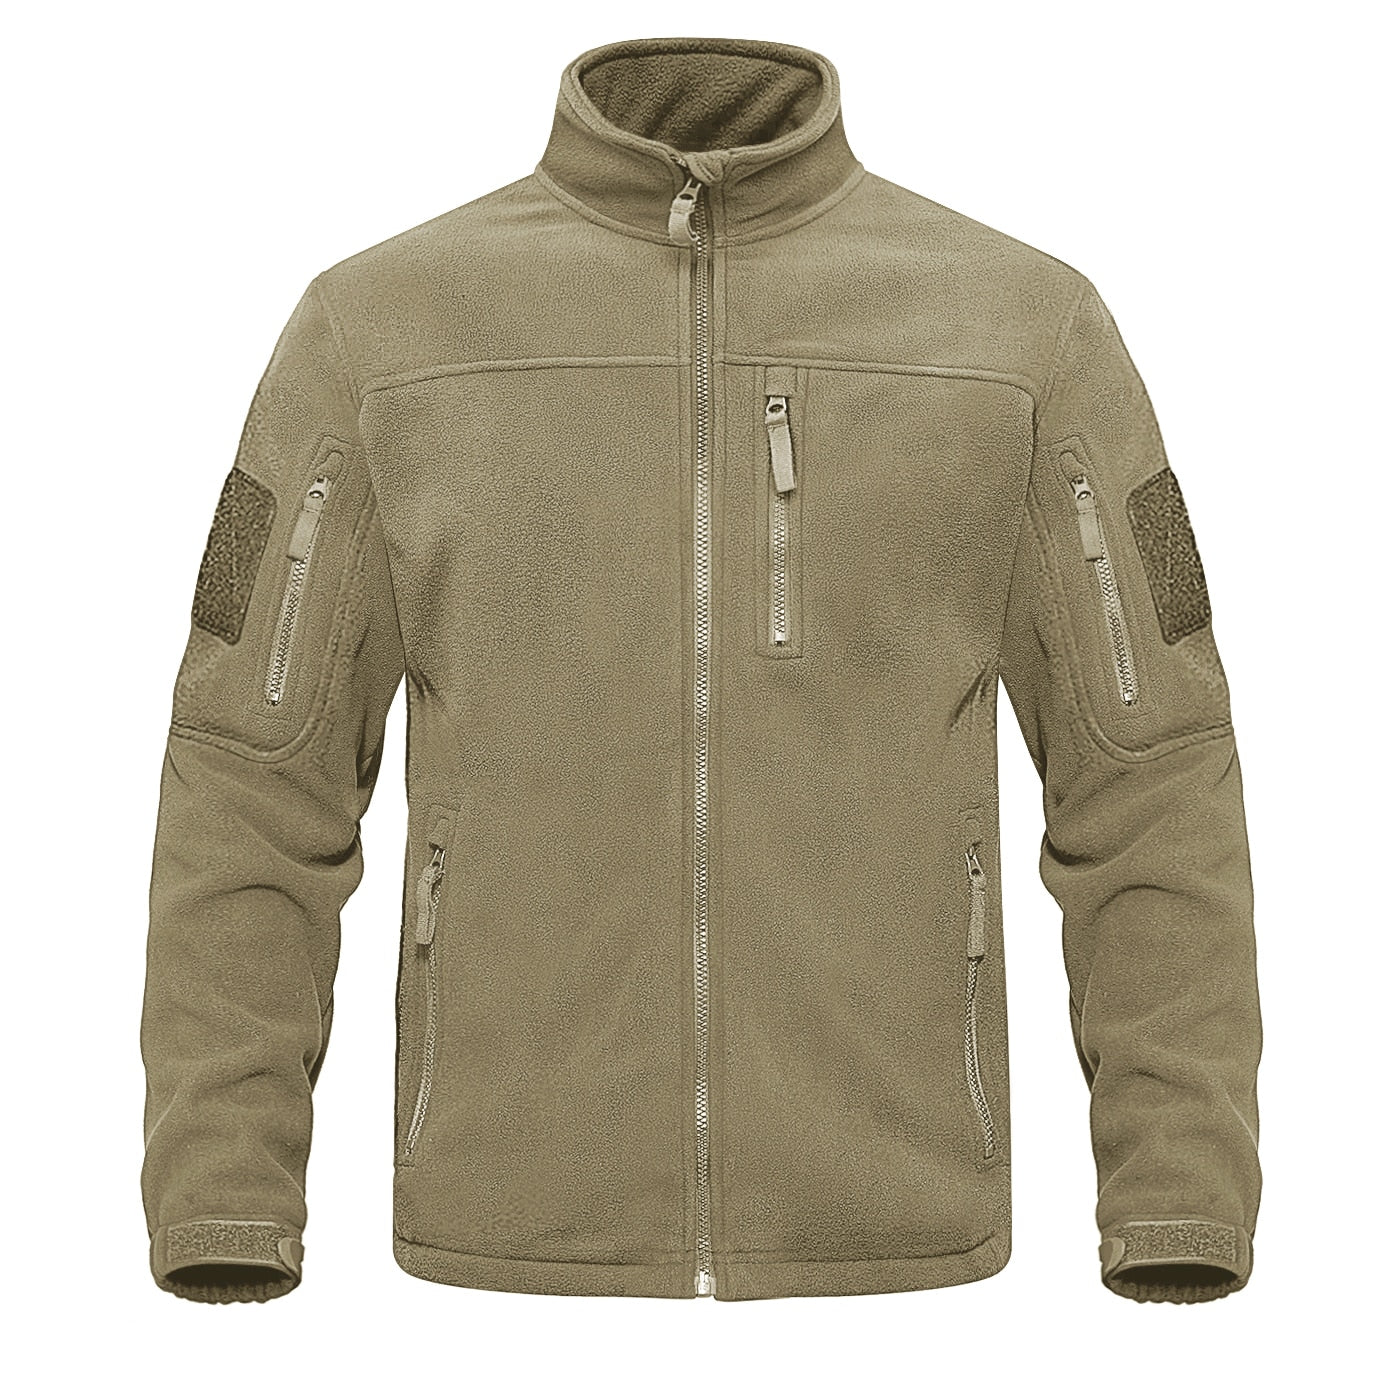 camouflage khaki jacket for hunting